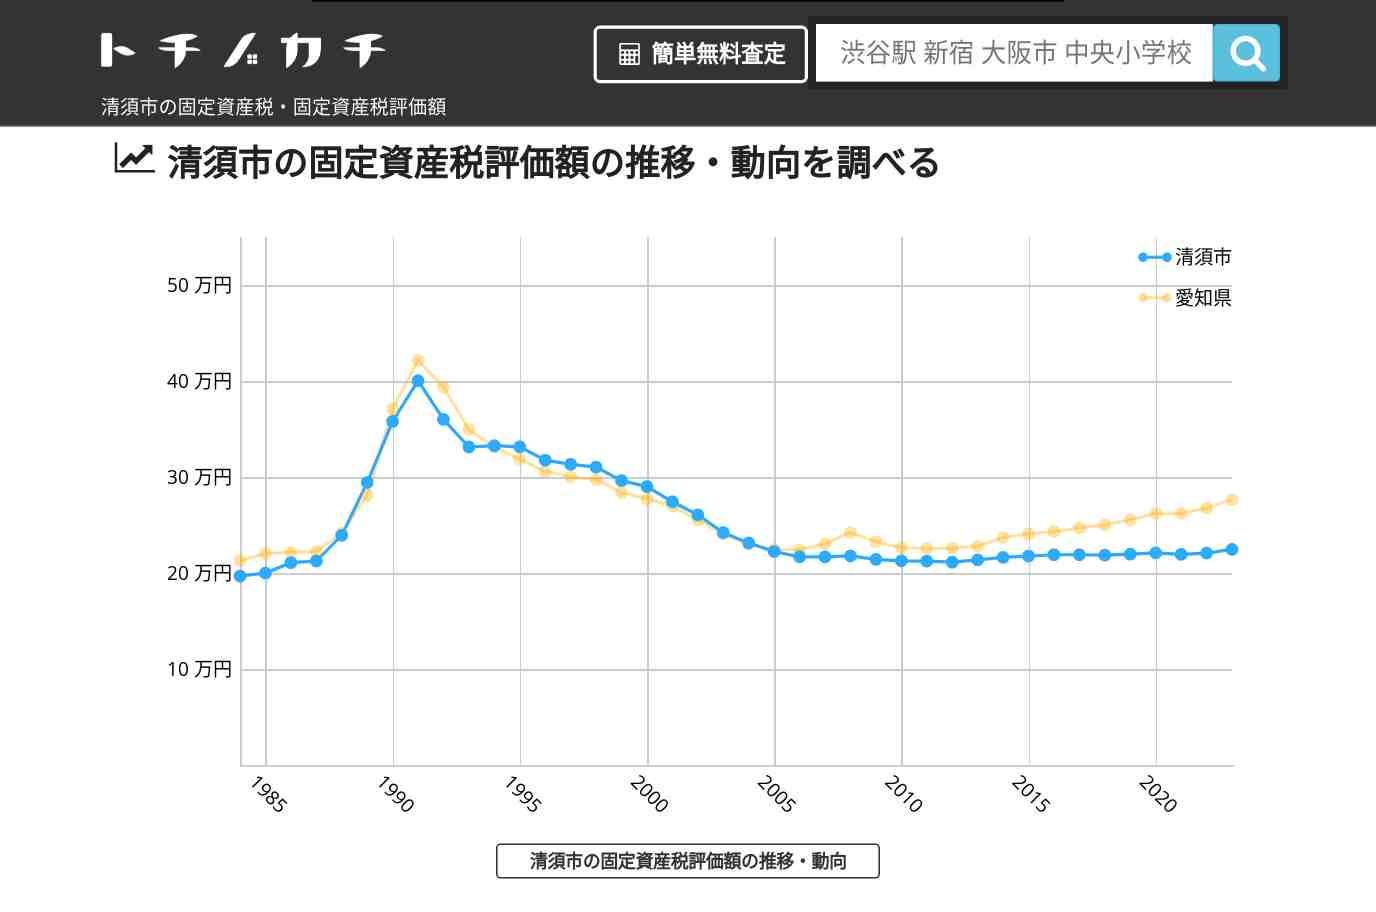 古城小学校(愛知県 清須市)周辺の固定資産税・固定資産税評価額 | トチノカチ